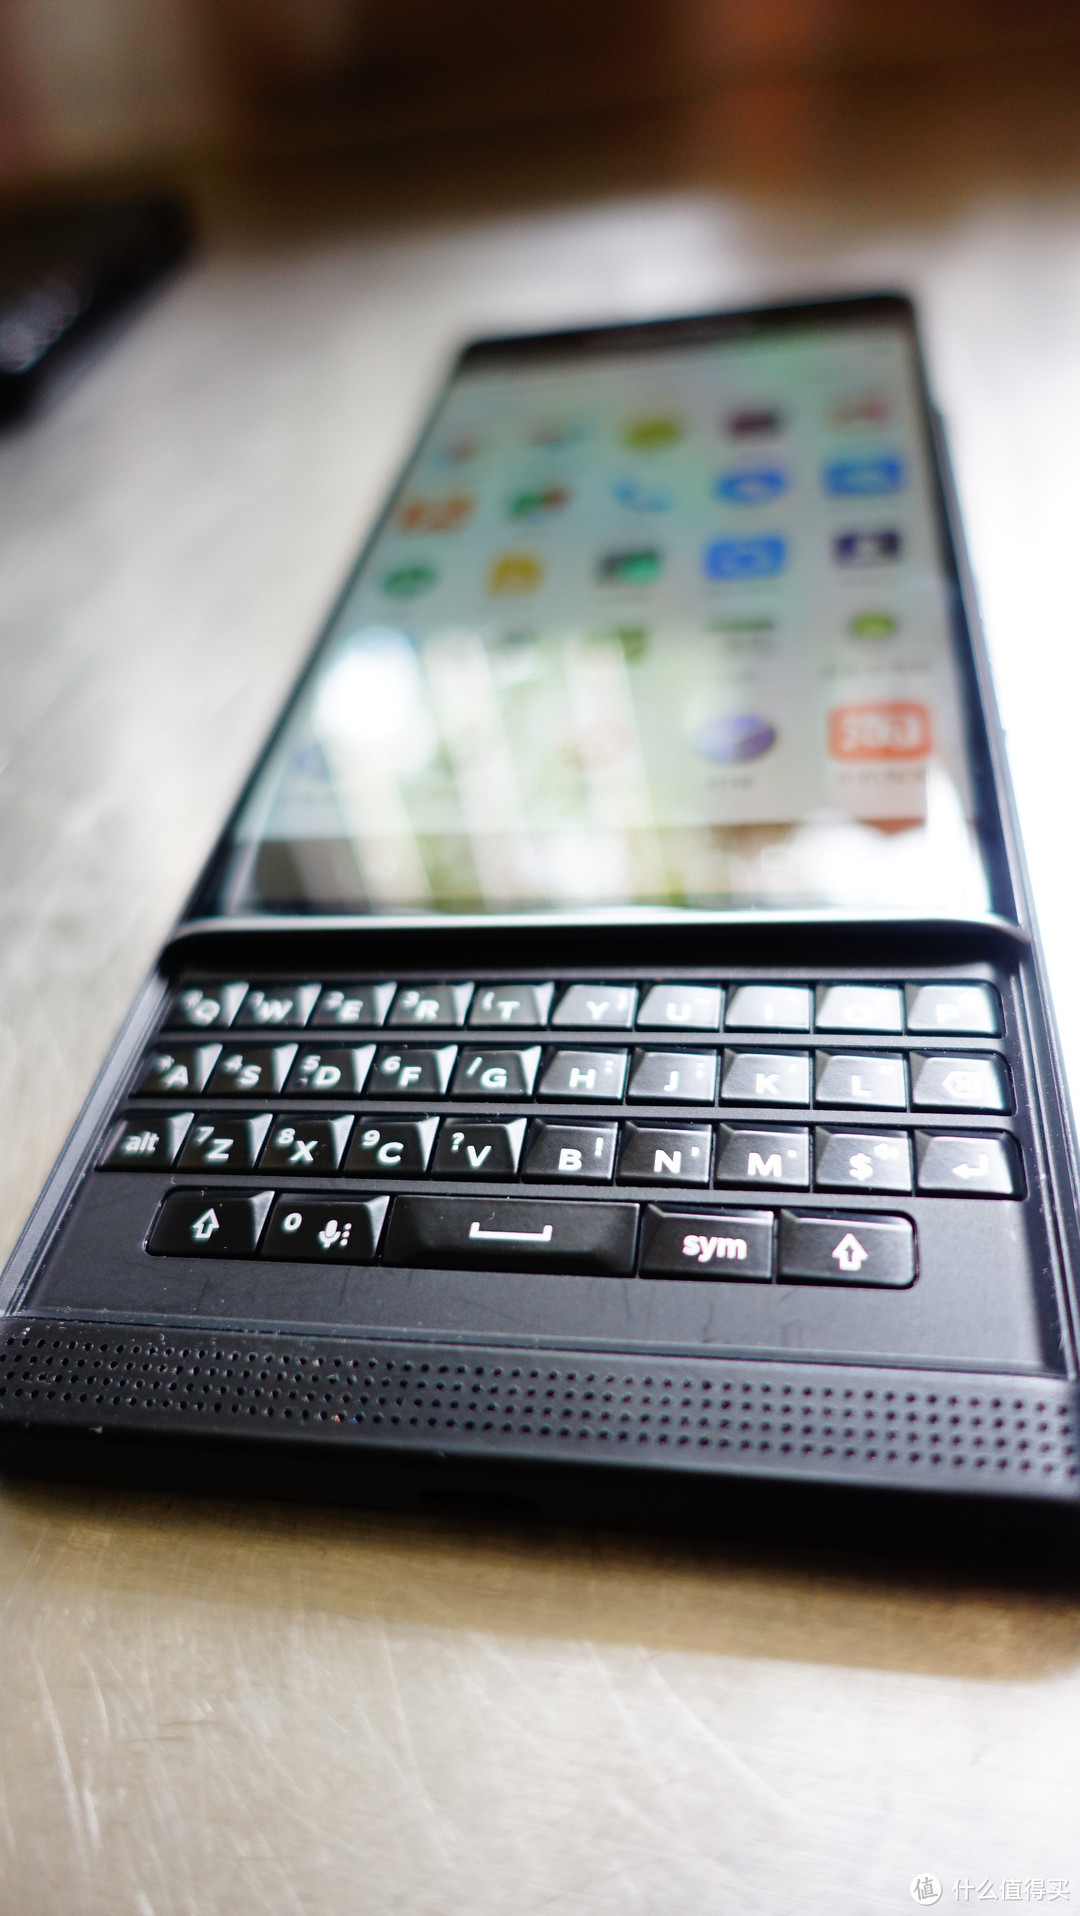 有莓有谱 好用不好用是后话：女莓友的存货与 BlackBerry 黑莓 Priv 智能手机